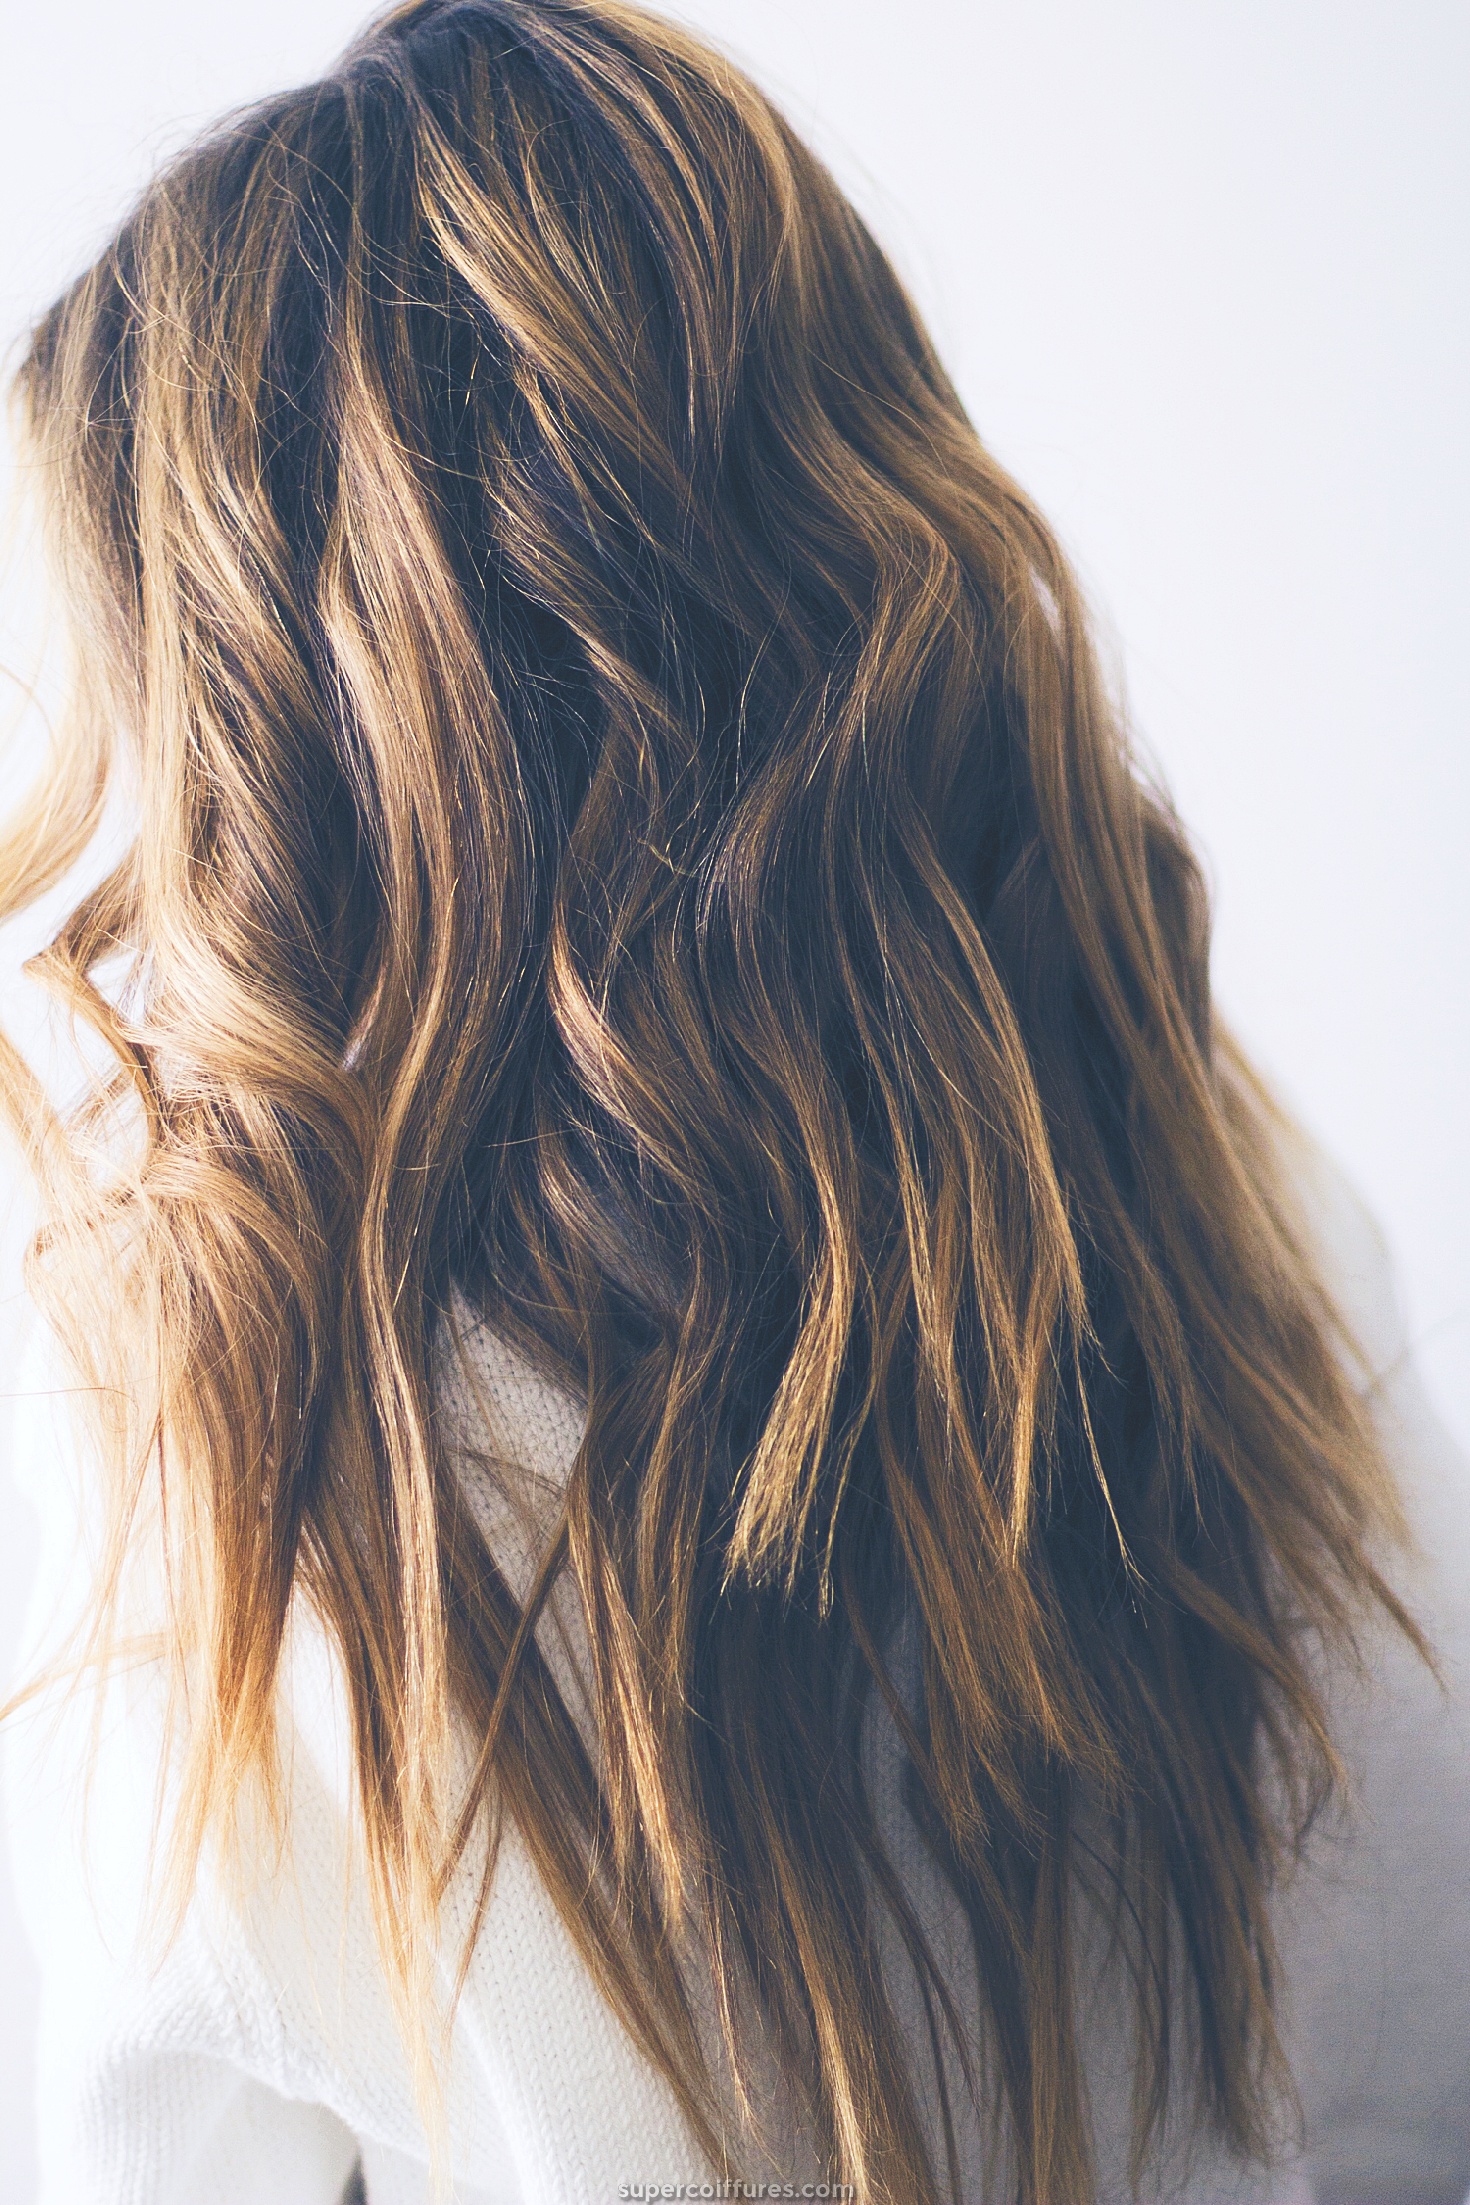 35 styles magnifiques pour avoir les vagues de la plage dans vos cheveux